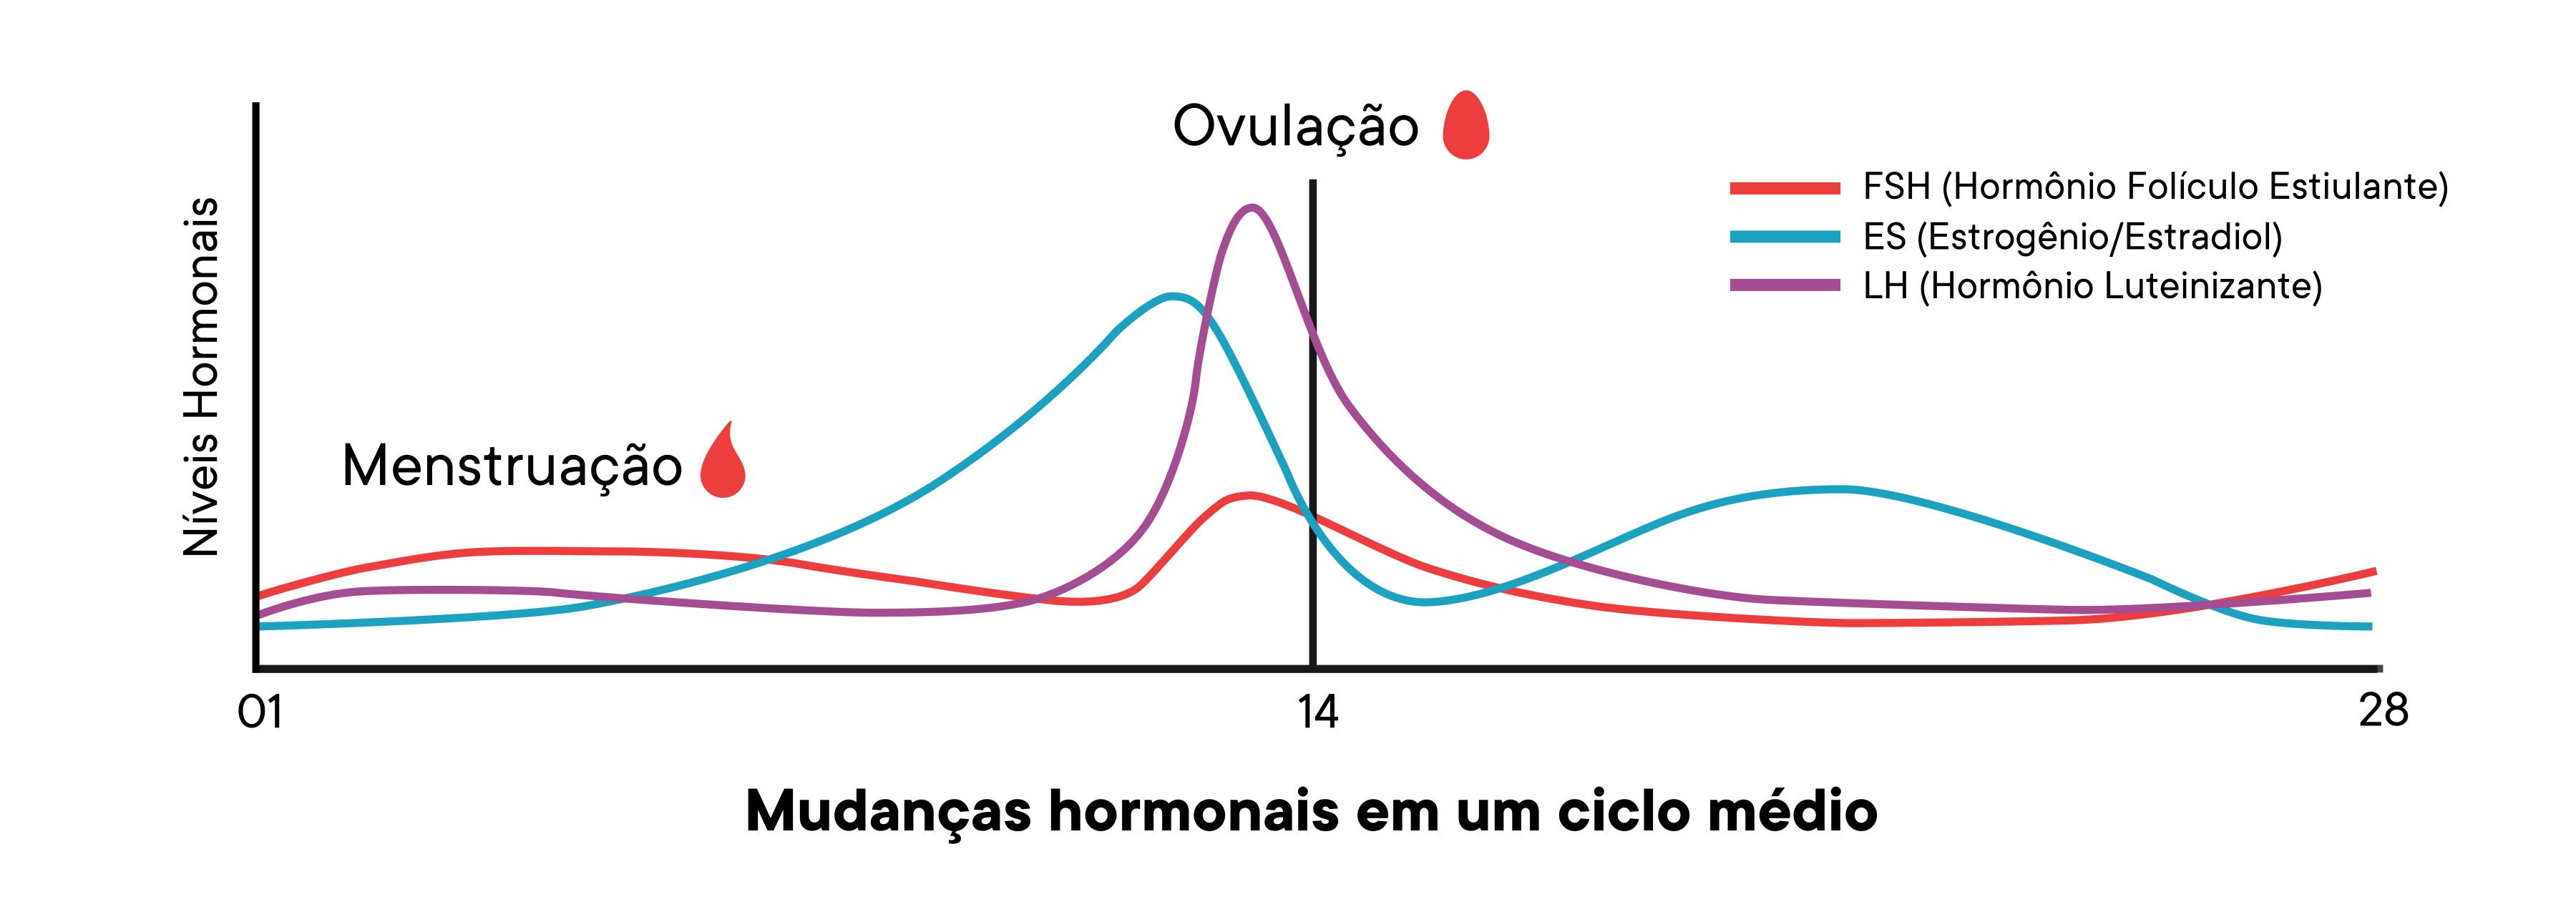 Um gráfico que mostra as mudanças dos níveis de hormônio em um ciclo médio ao longo do tempo